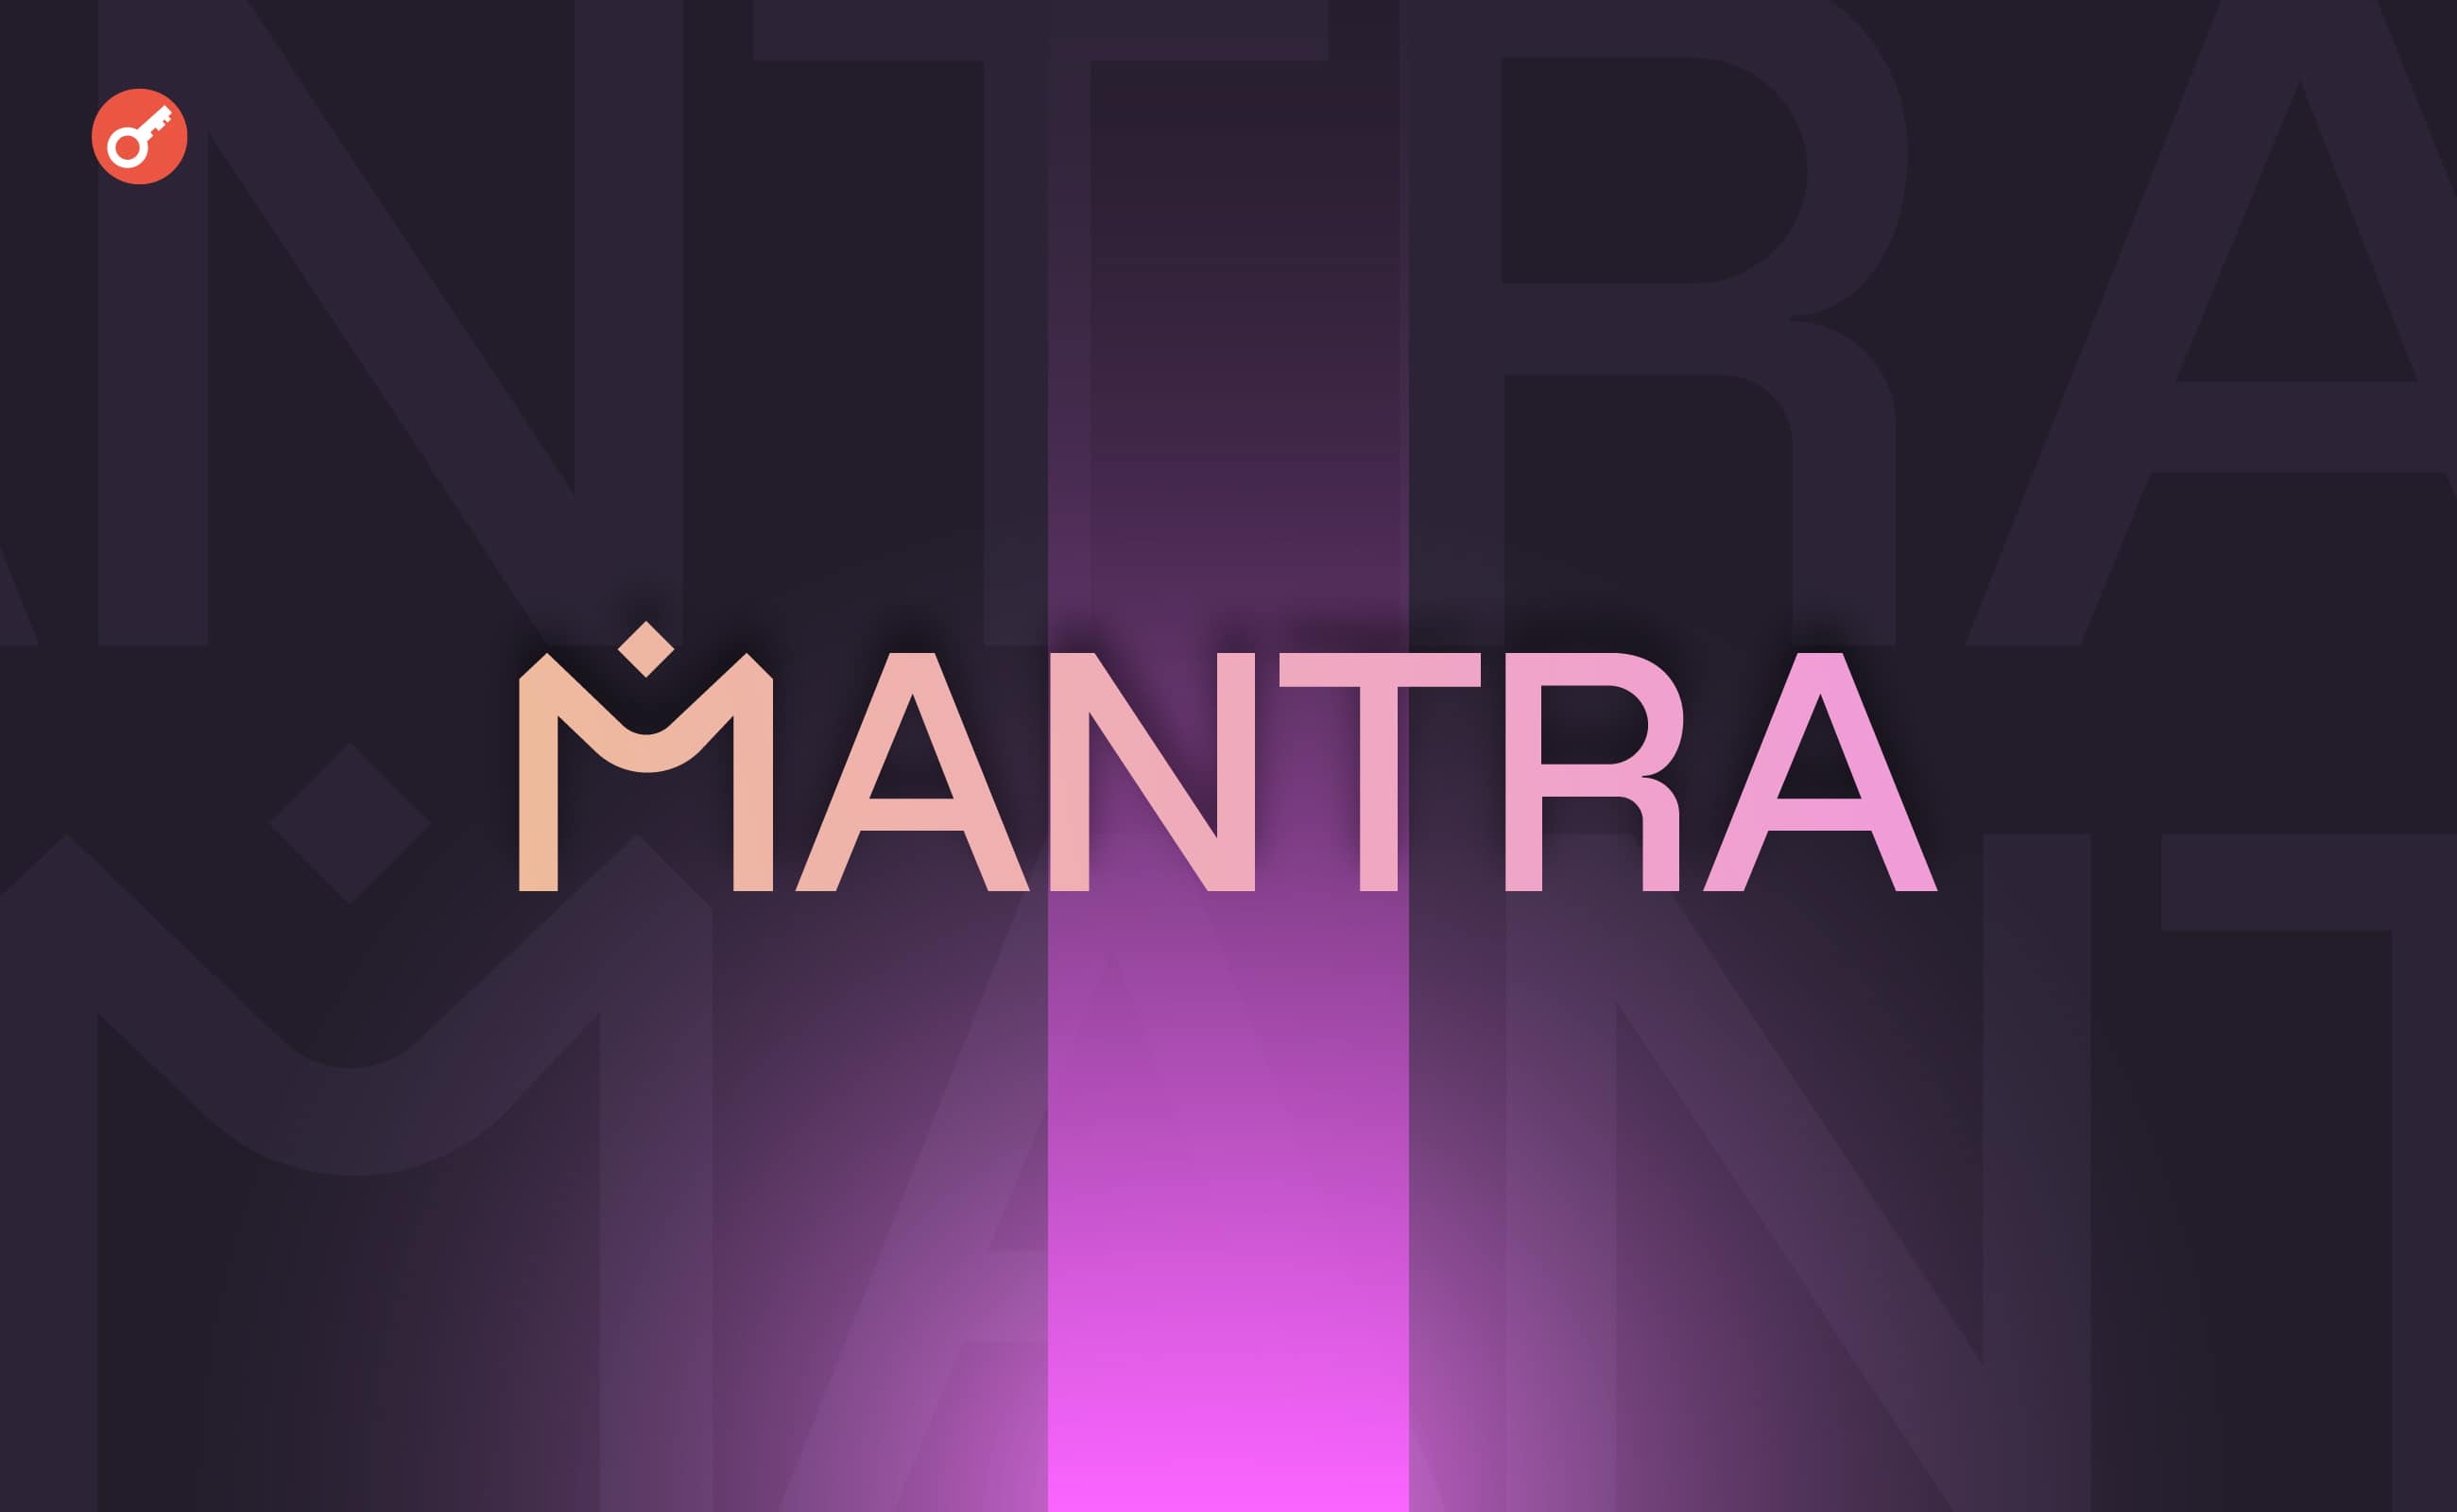 Startup MANTRA pozyskał 11 milionów dolarów inwestycji. Główny kolaż wiadomości.